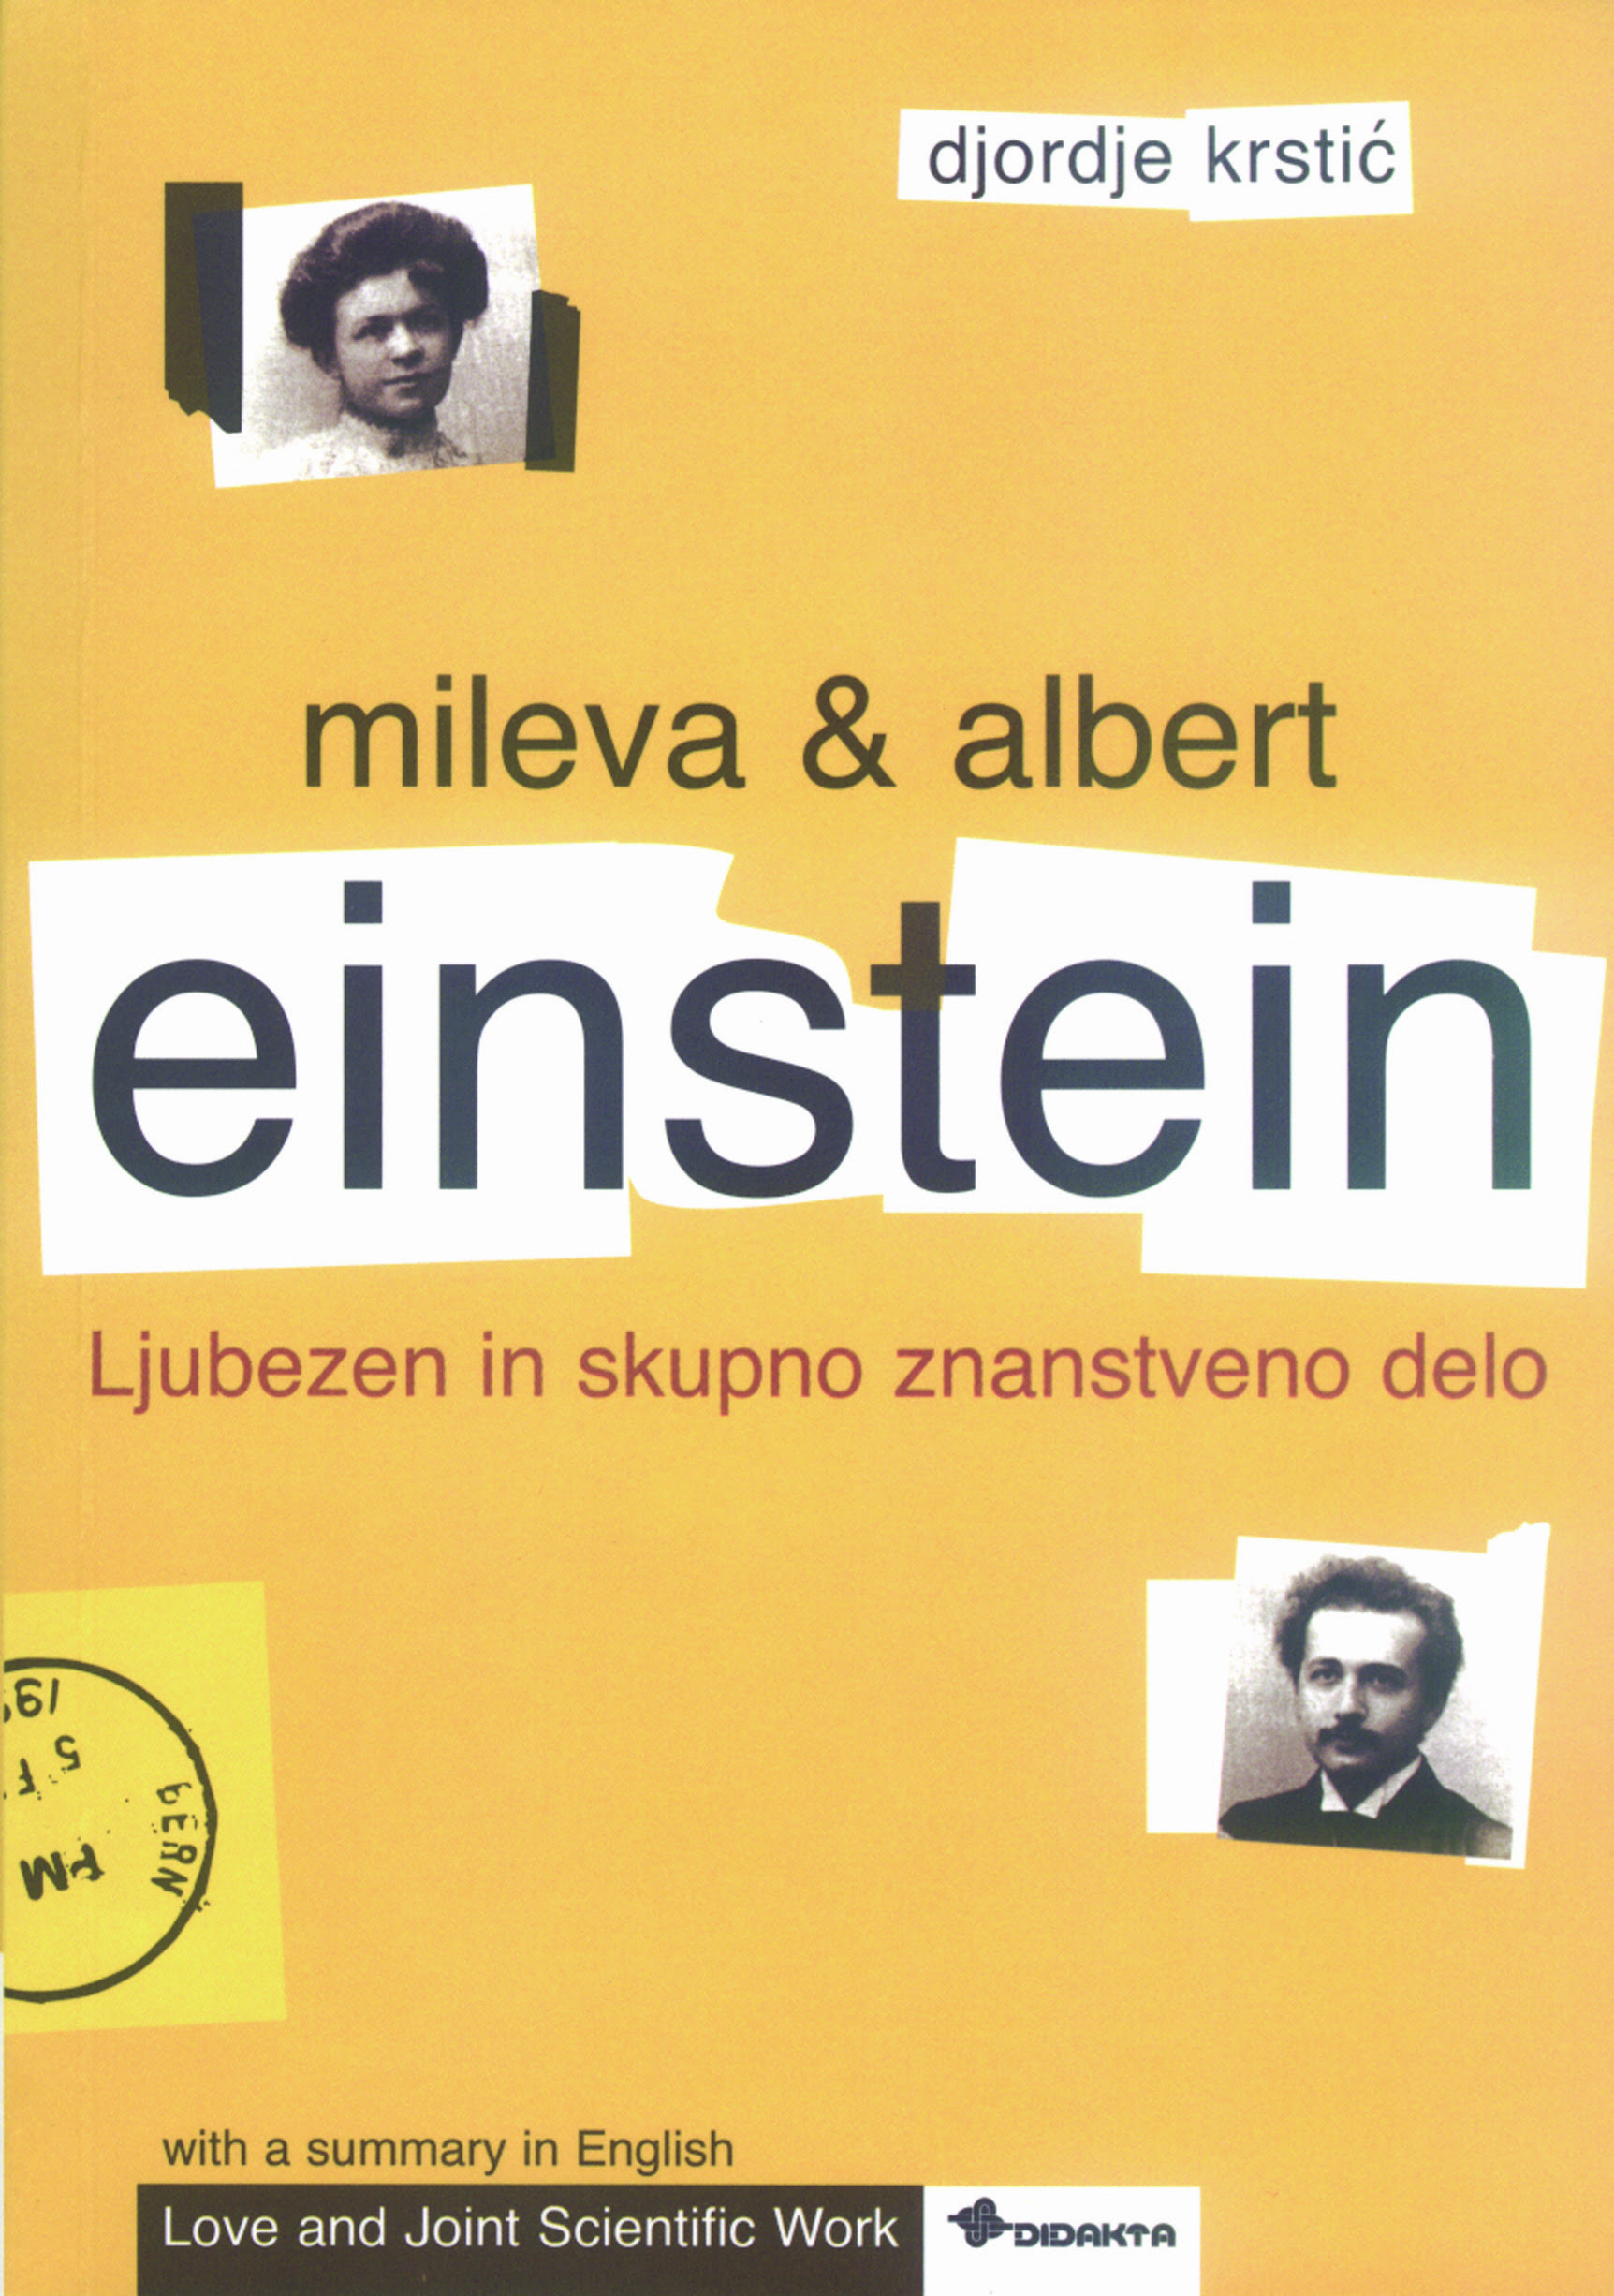 Mileva & Albert Einstein (angleška izdaja) Djordje Krstić